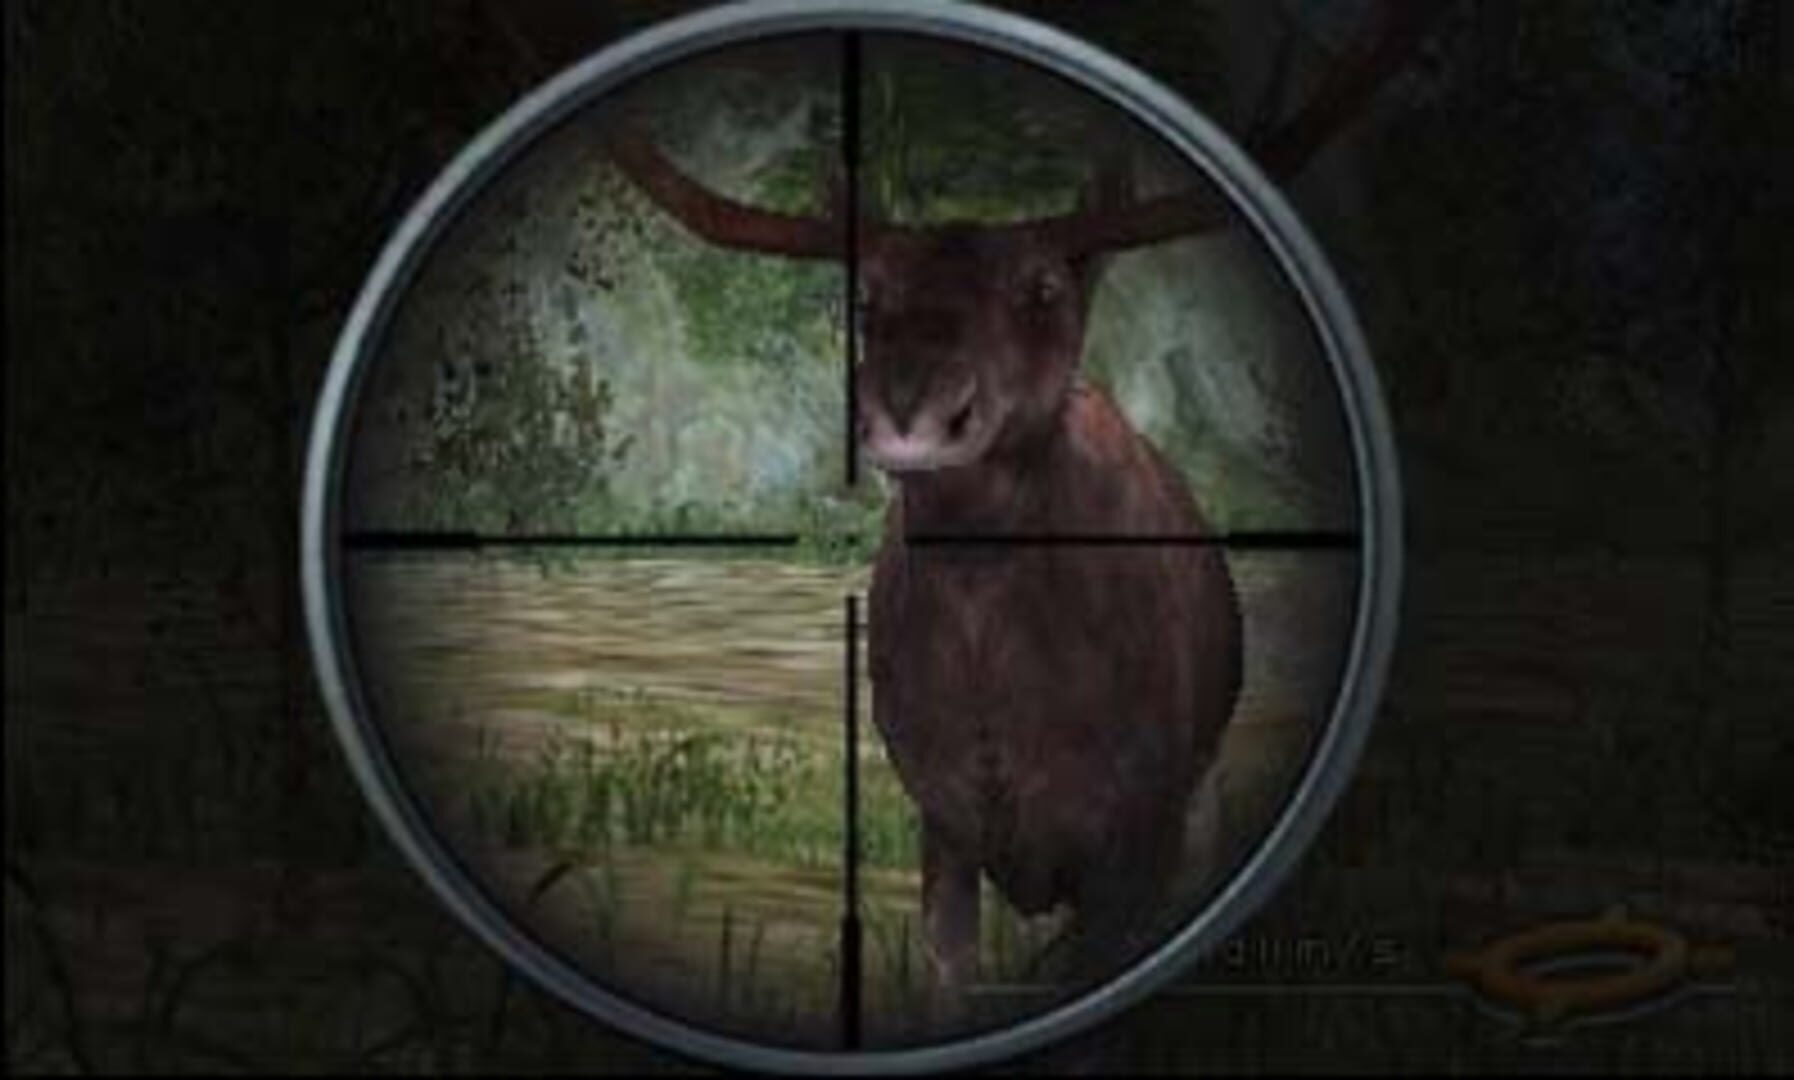 Deer Drive Legends screenshot